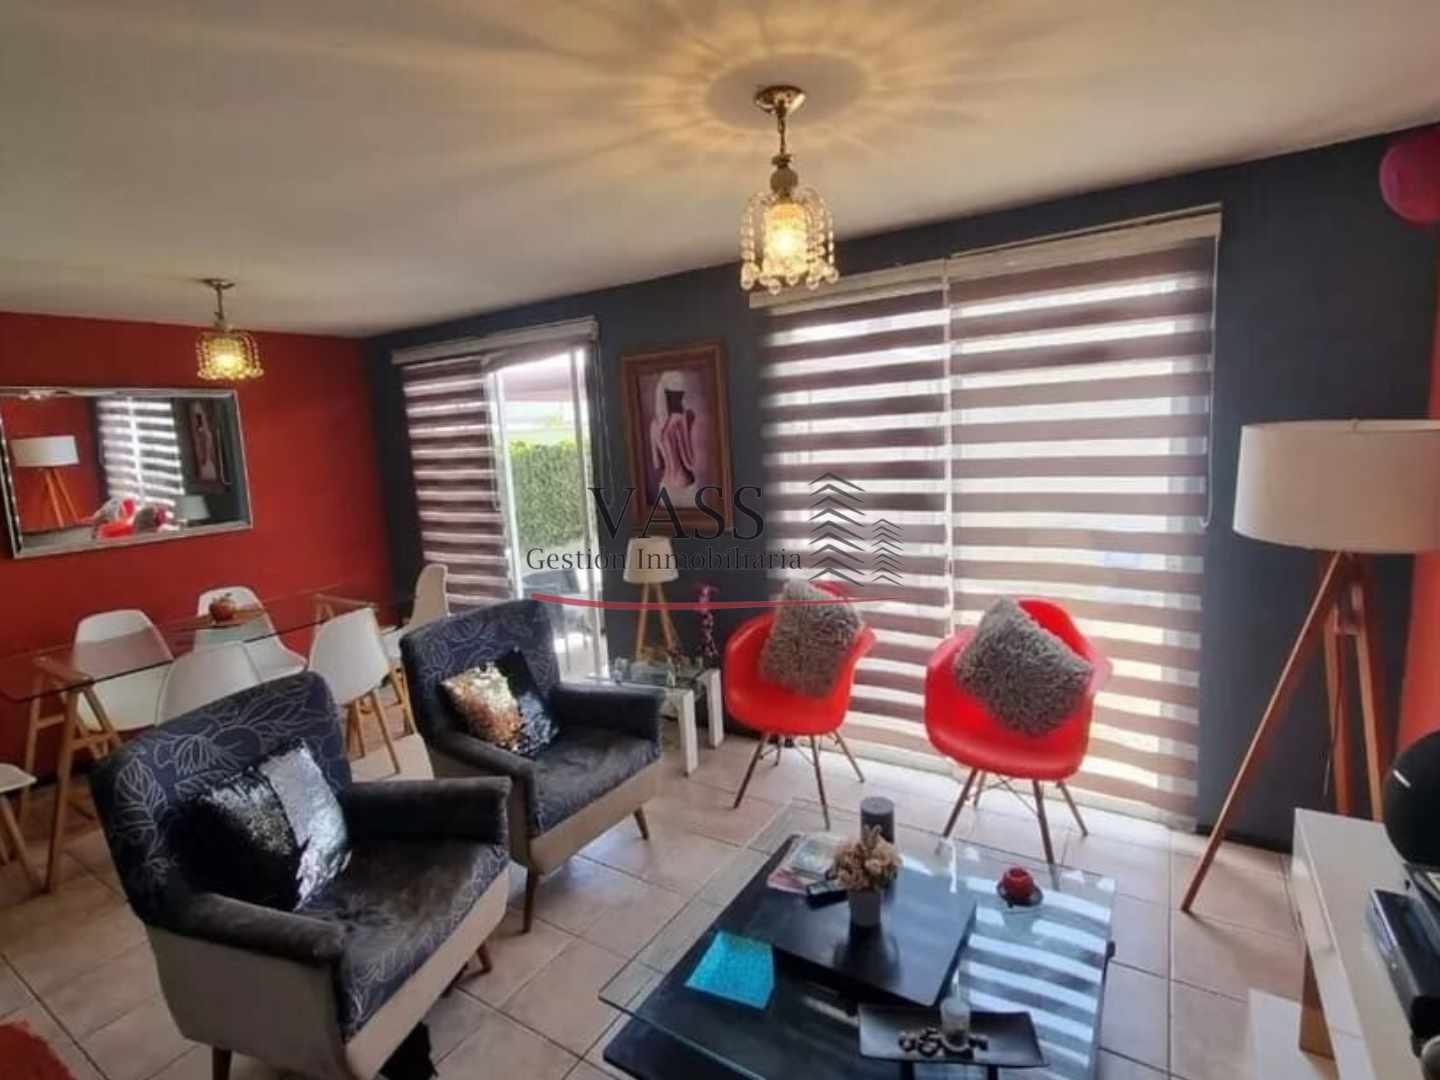 VASS Gestión Inmobiliaria vende casa 3D 3B en sector Los Pinos de Quilpué